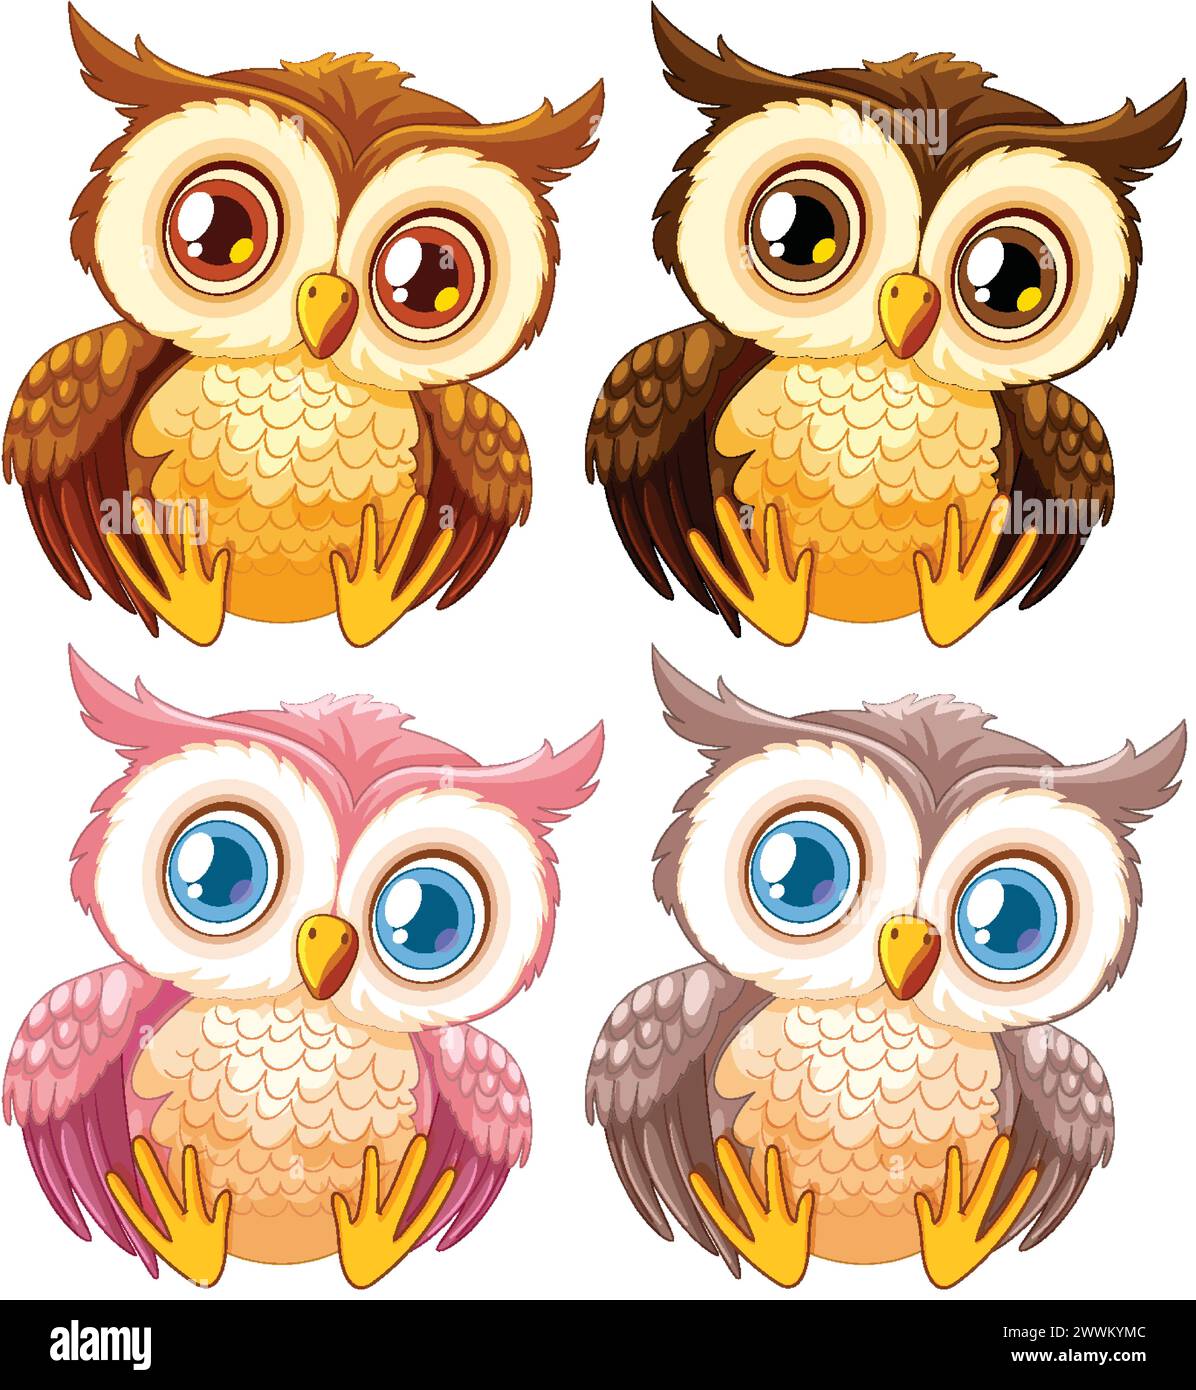 Quatre chouettes illustrées mignonnes avec des yeux expressifs Illustration de Vecteur